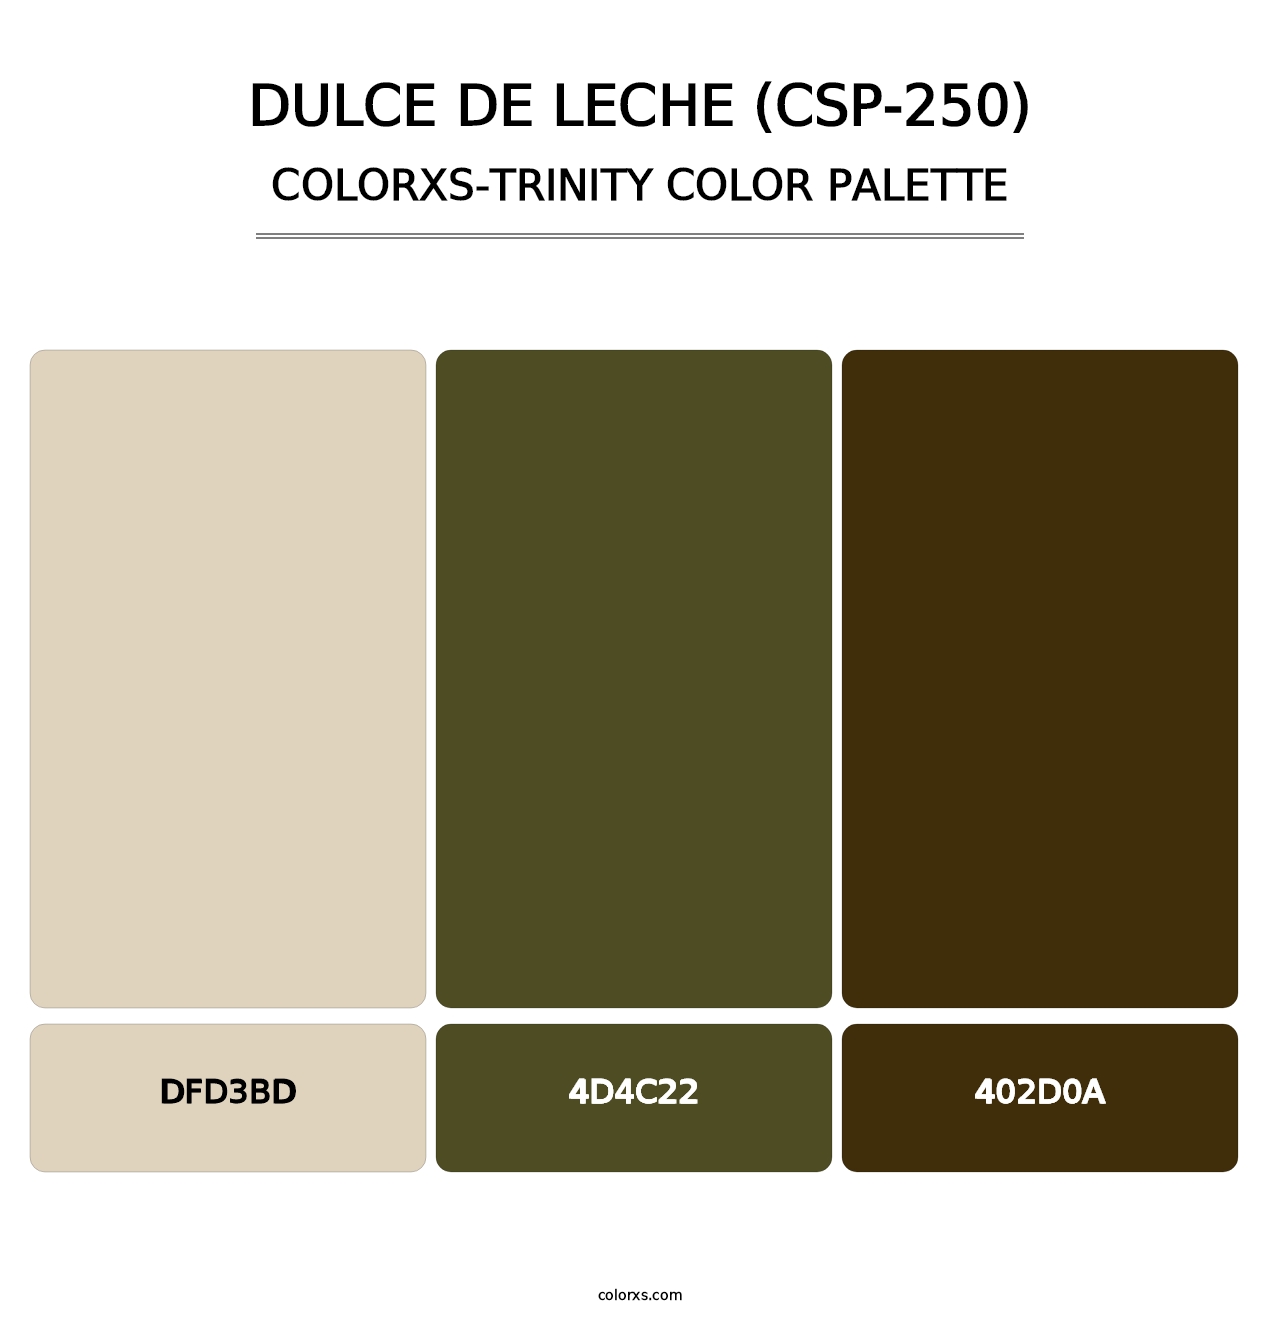 Dulce de Leche (CSP-250) - Colorxs Trinity Palette